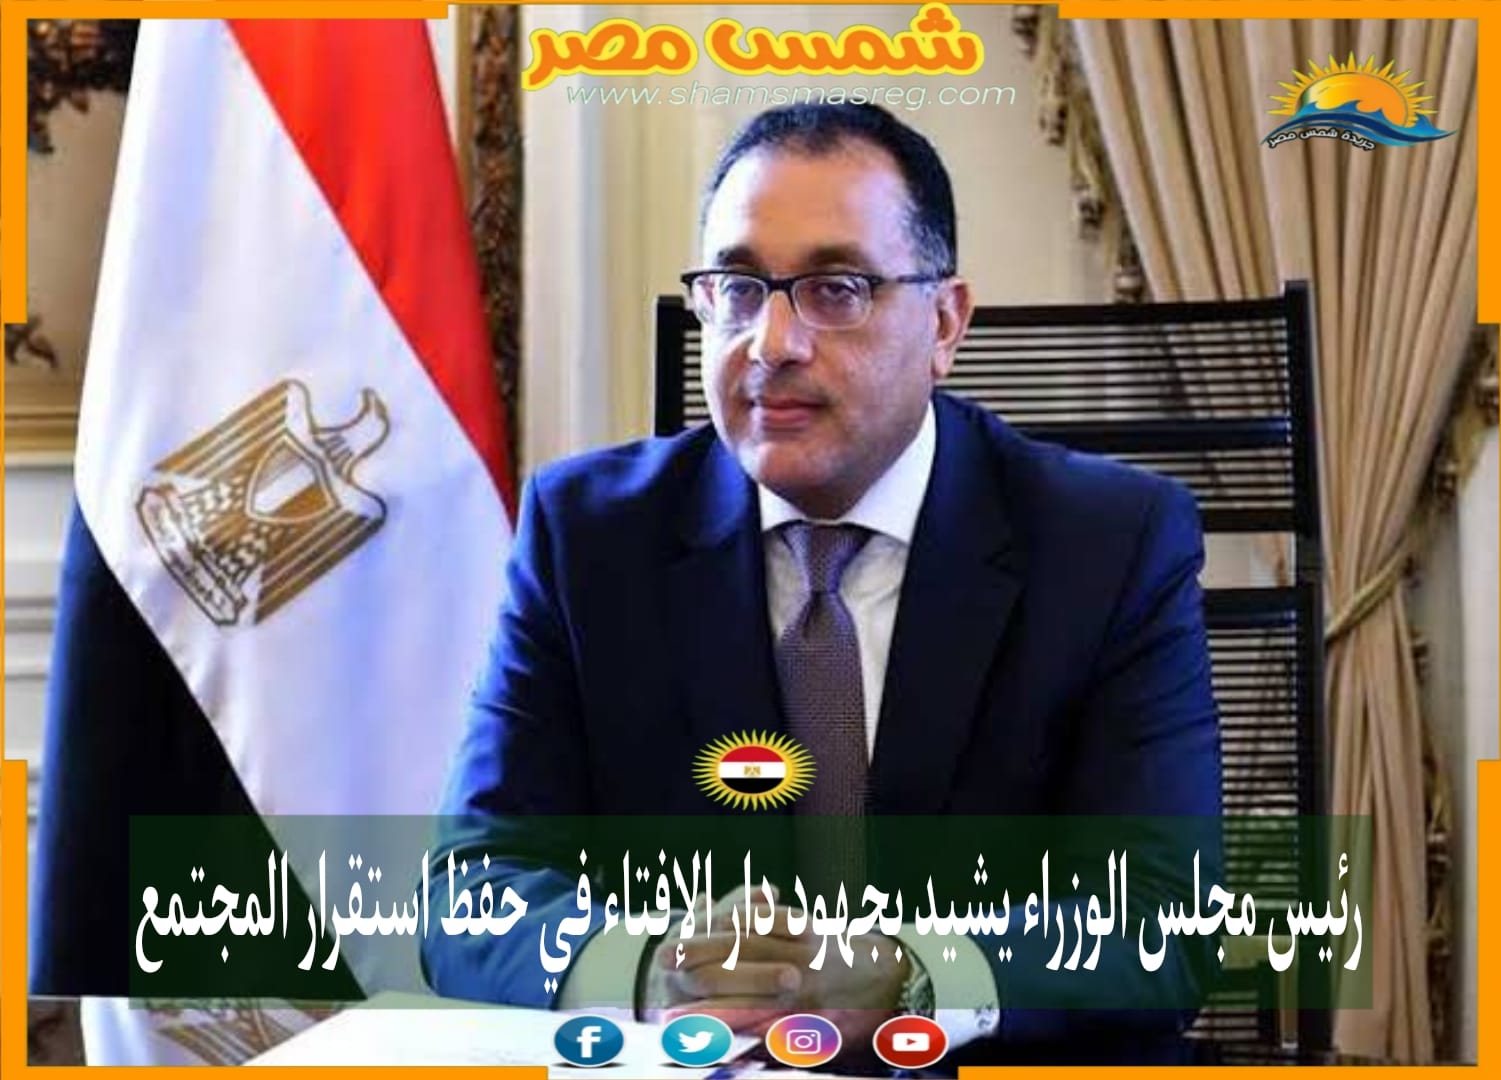 |شمس مصر|.. رئيس مجلس الوزراء يشيد بجهود دار الإفتاء في حفظ استقرار المجتمع.